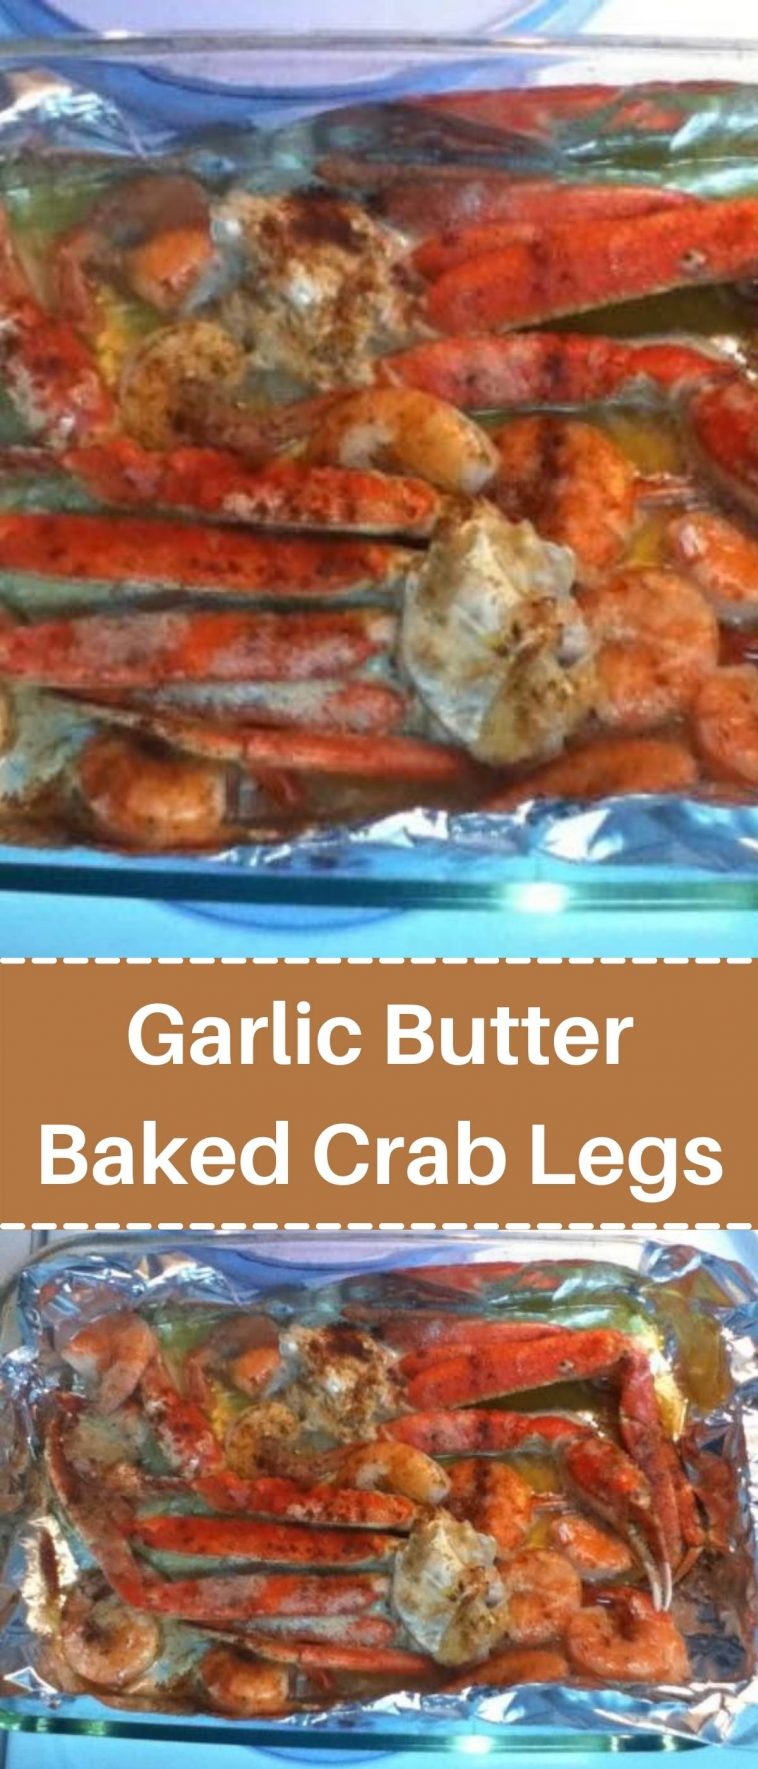 Garlic Butter Baked Crab Legs